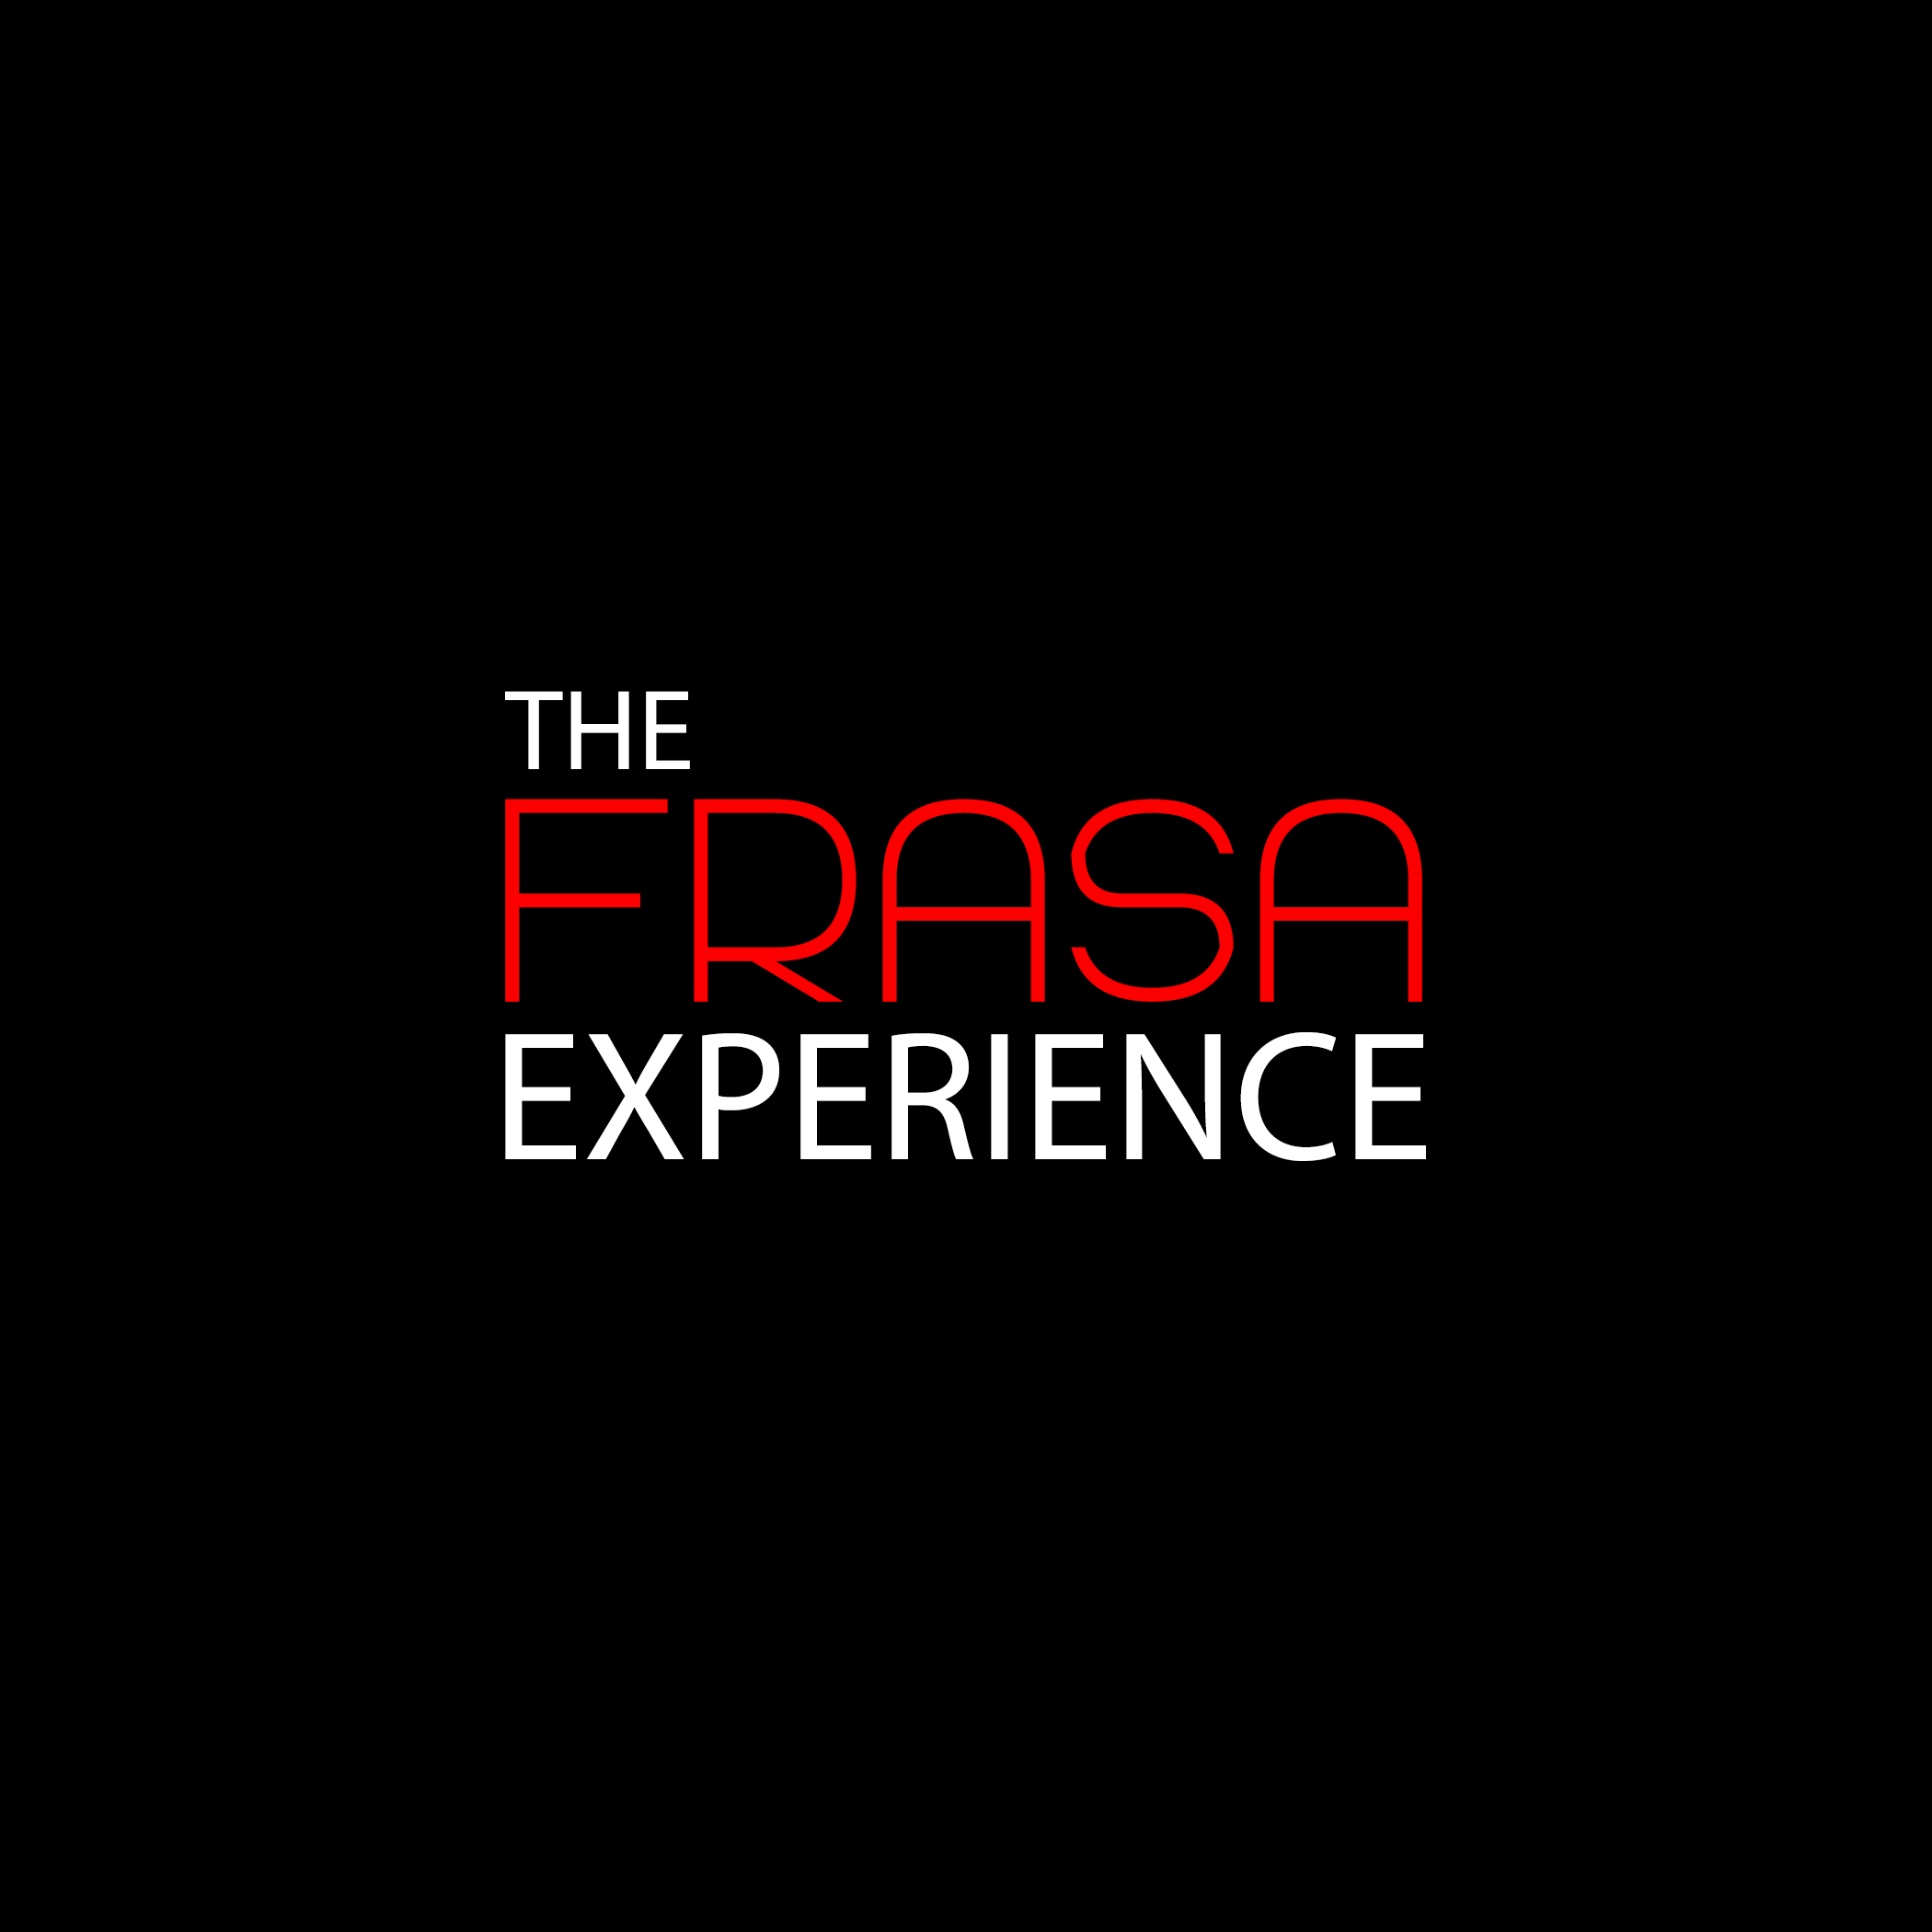 The FRASA Experience